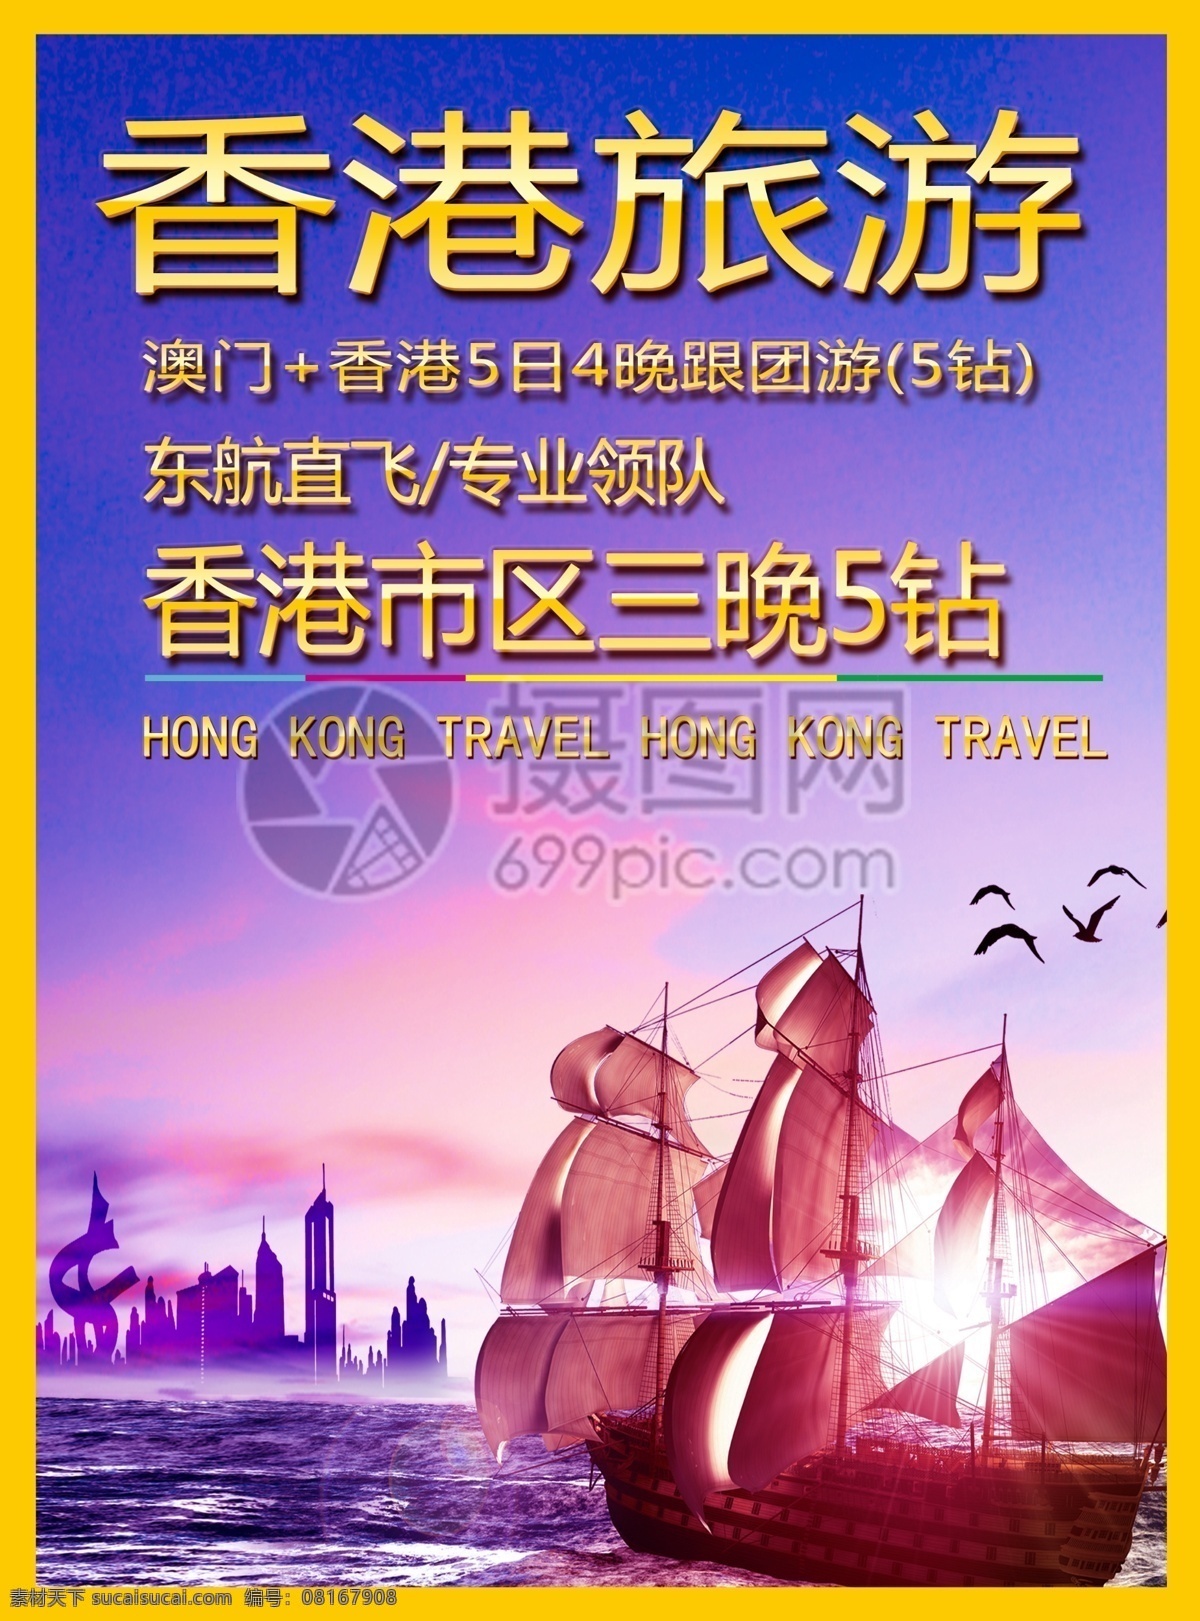 香港旅游 宣传单 香港 澳门 城市 购物 高楼 旅游 度假 旅游宣传 宣传单设计 假期 游玩